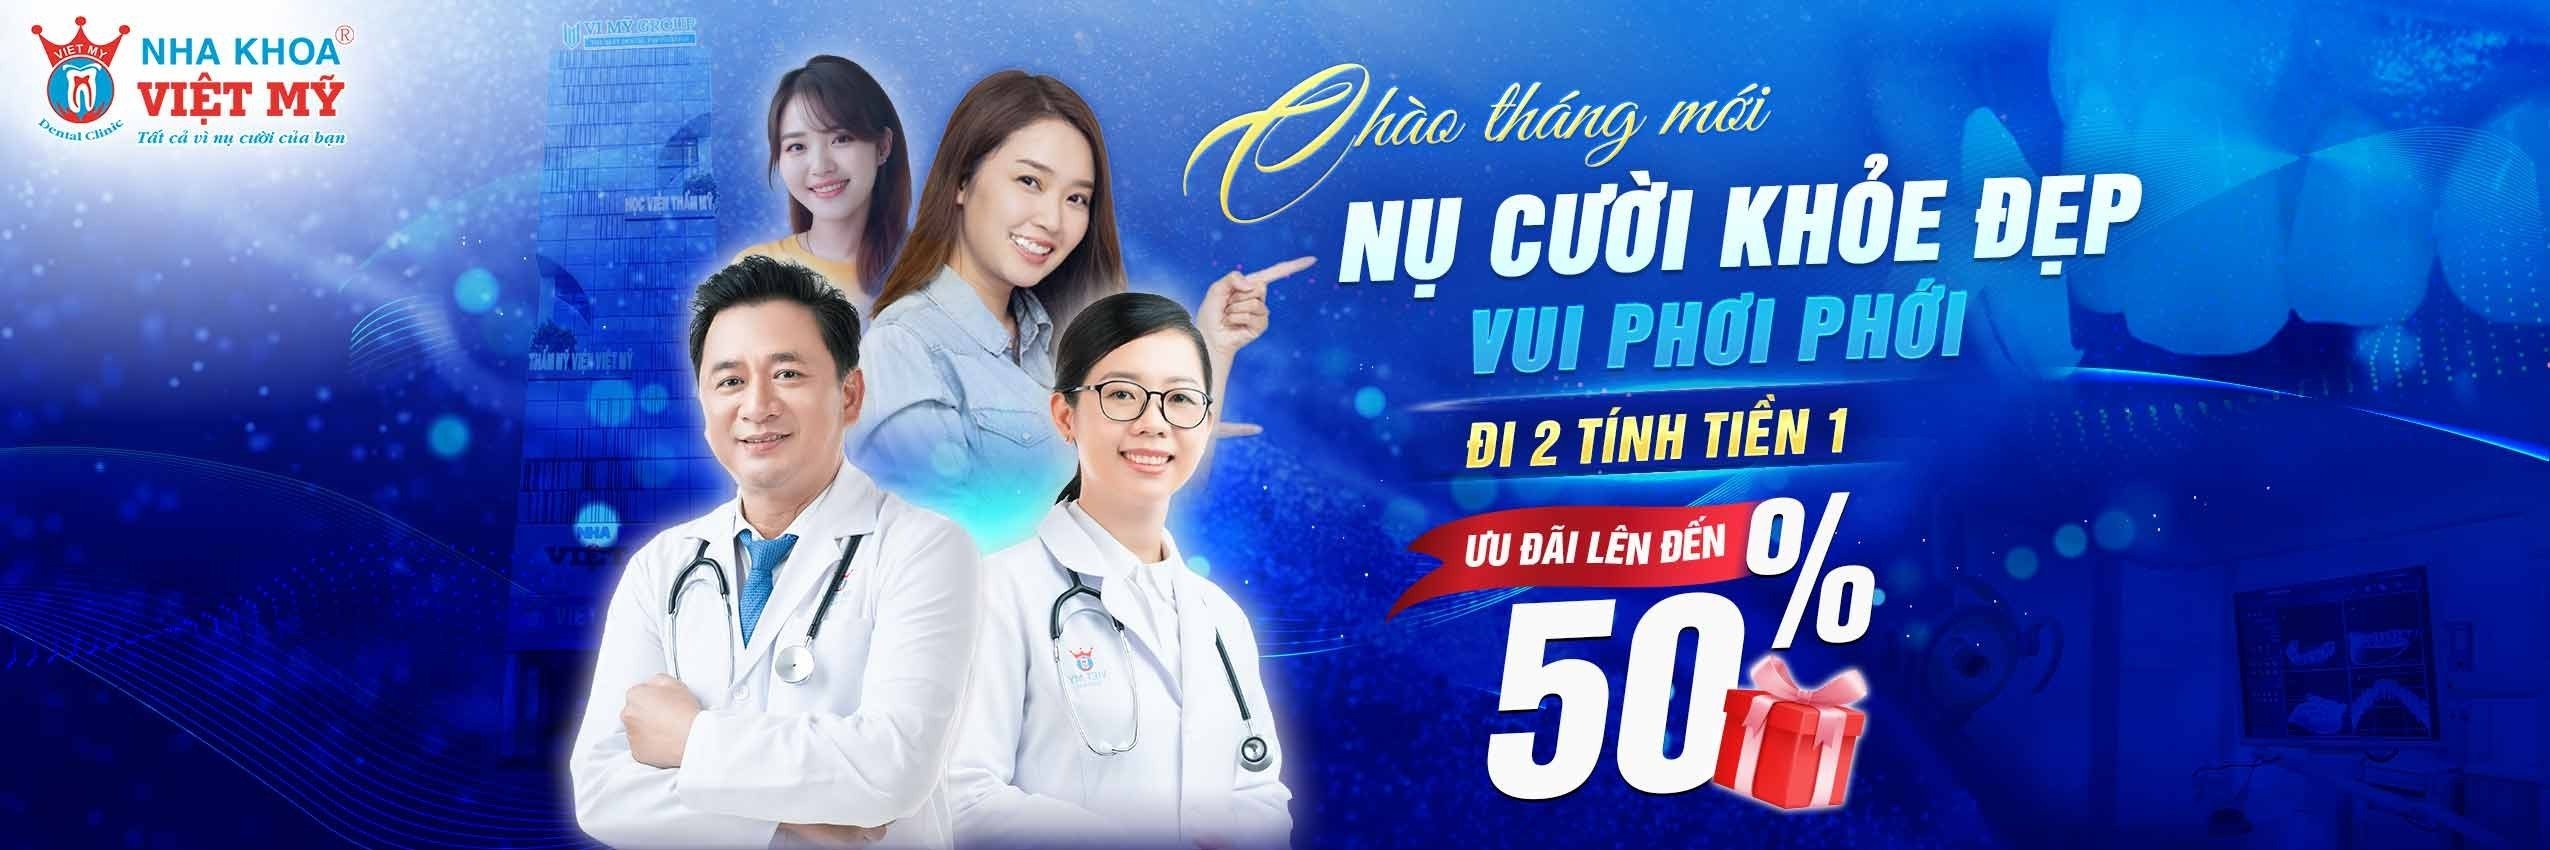 Chuong-trinh-uu-dai-nha-khoa-Viet-My